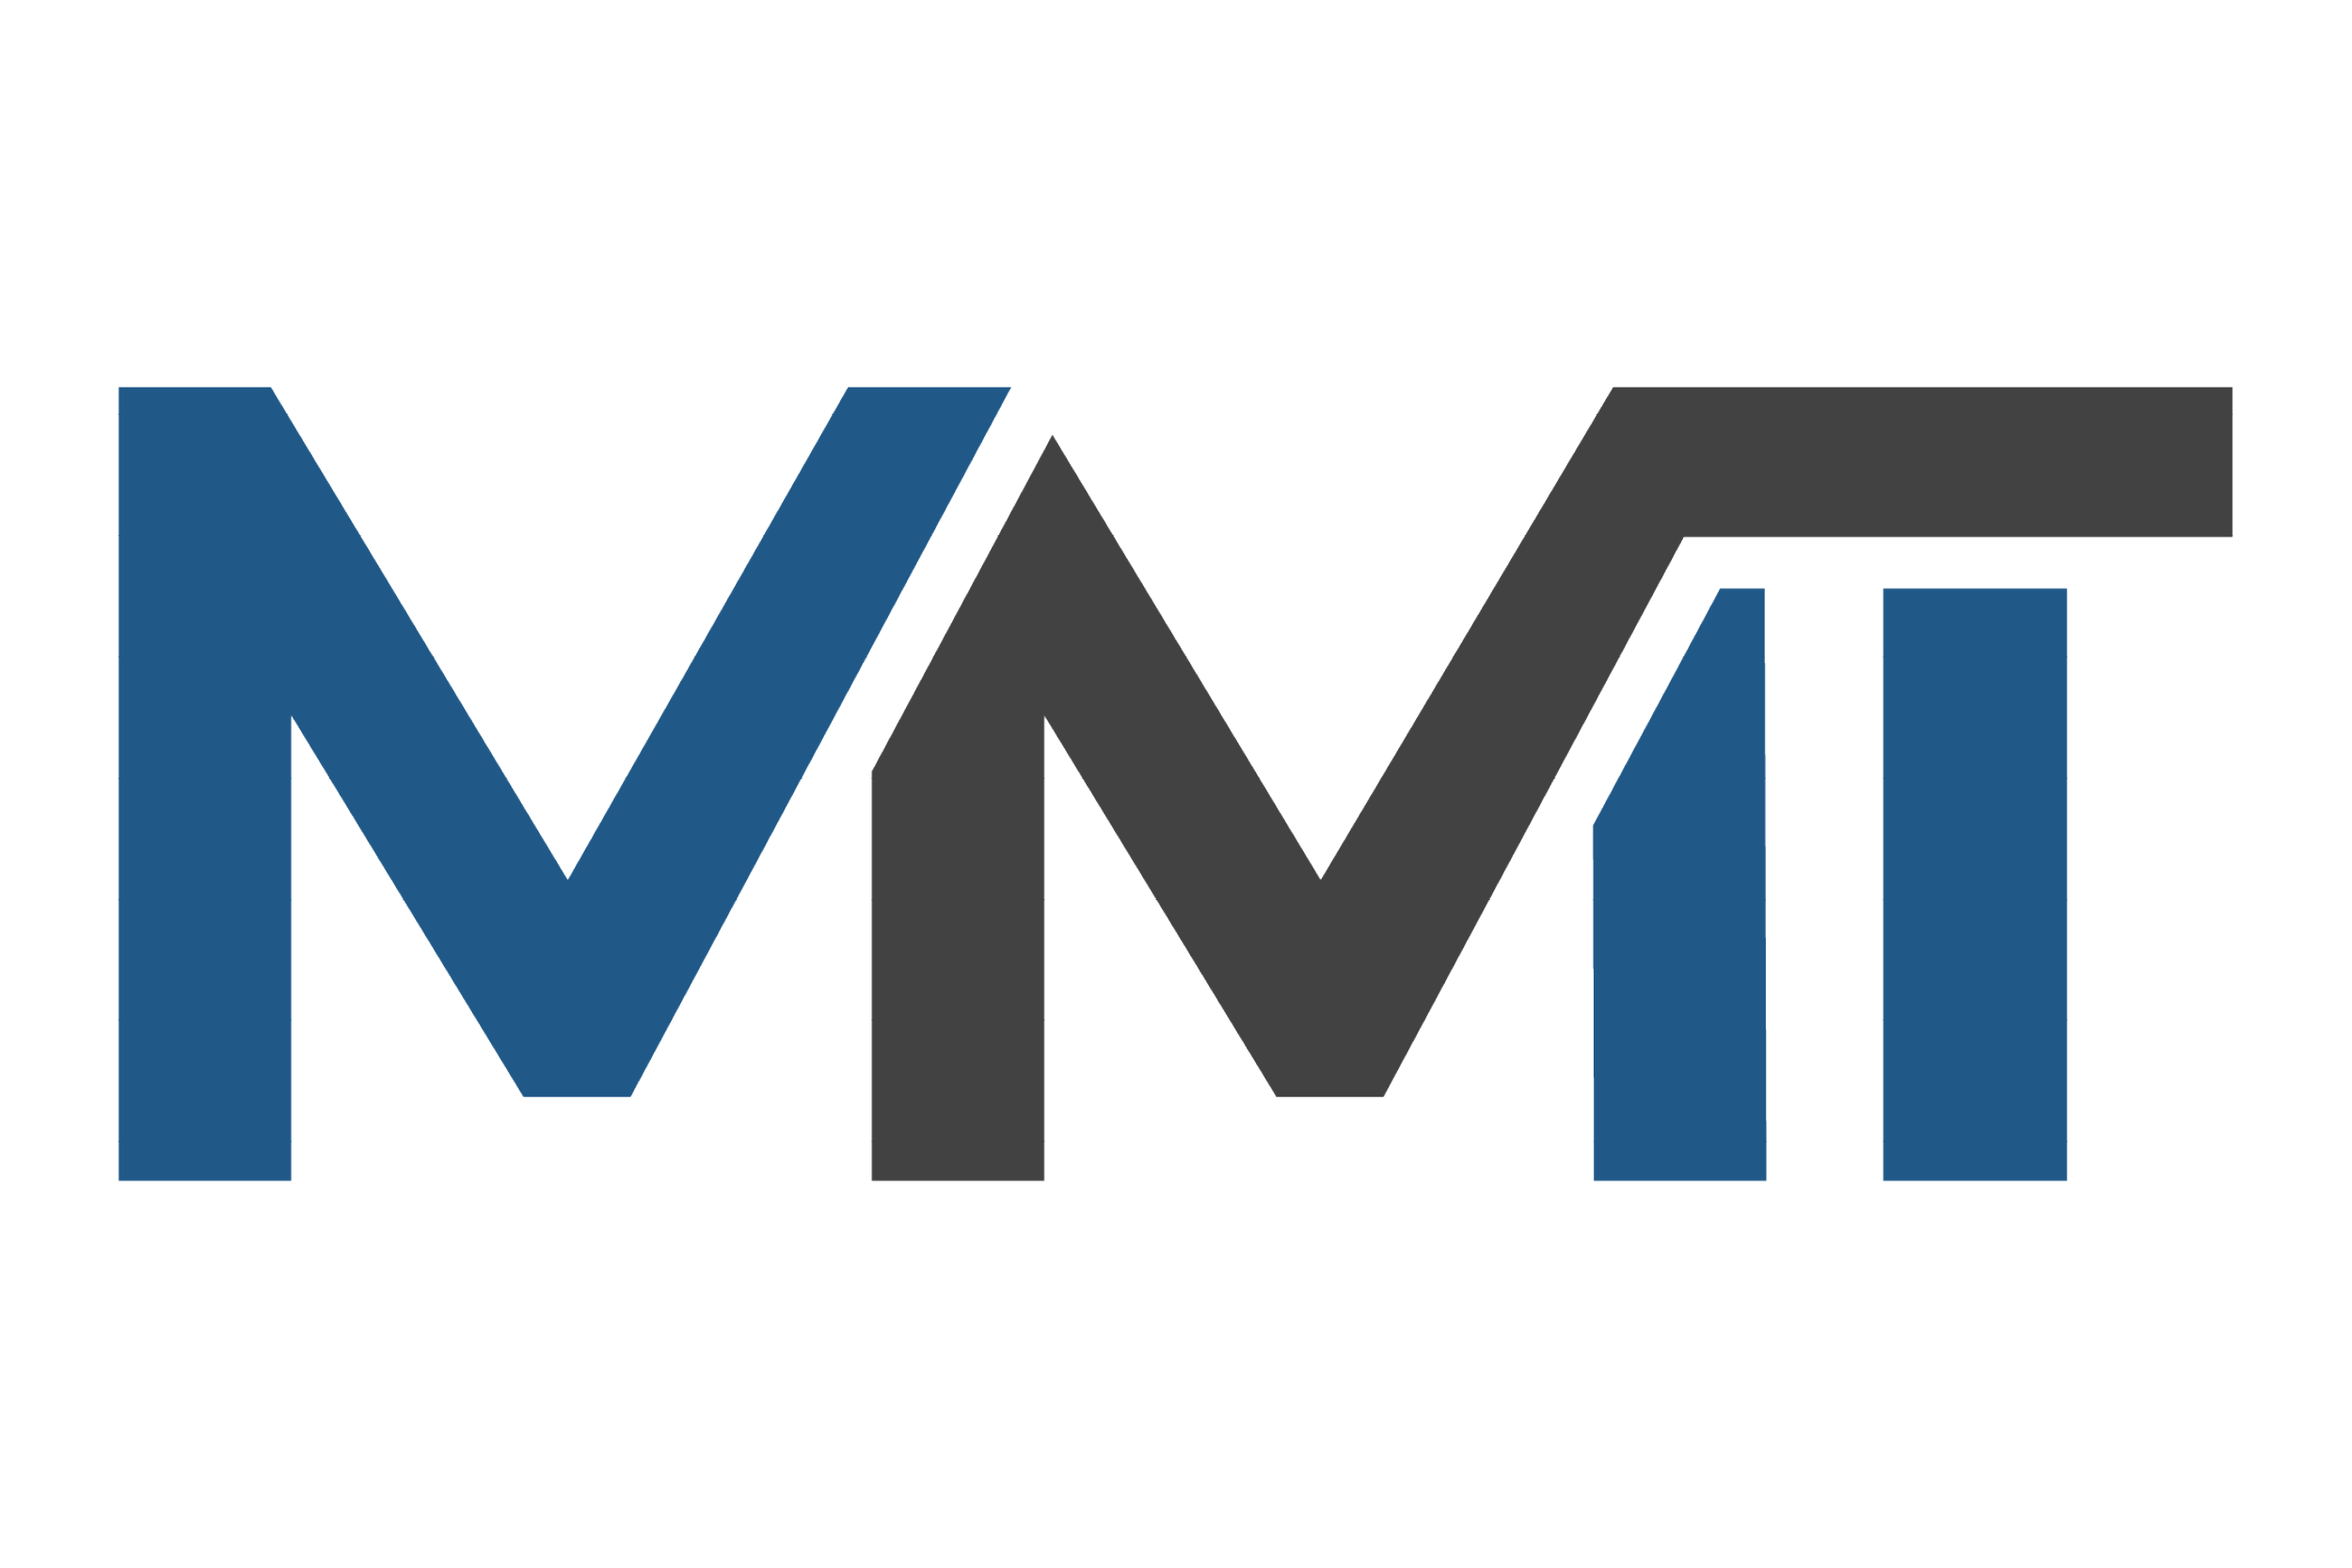 Logo MMT